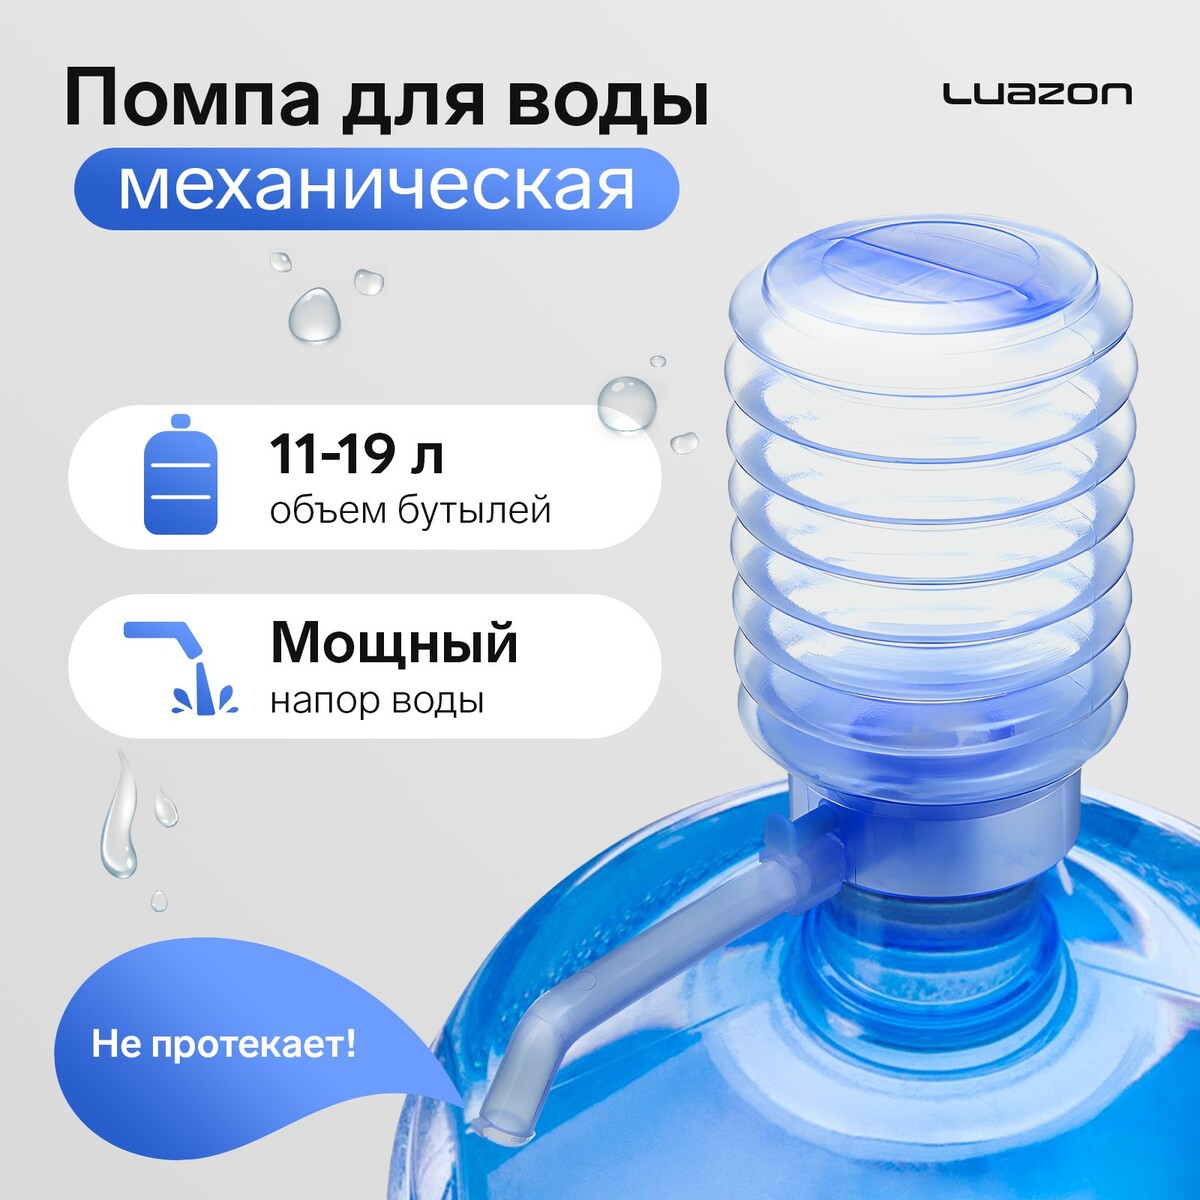 Помпа для воды luazon, механическая, прозрачная, под бутыль от 11 до 19 л, голубая помпа для воды luazon механическая большая под бутыль от 11 до 19 л голубая